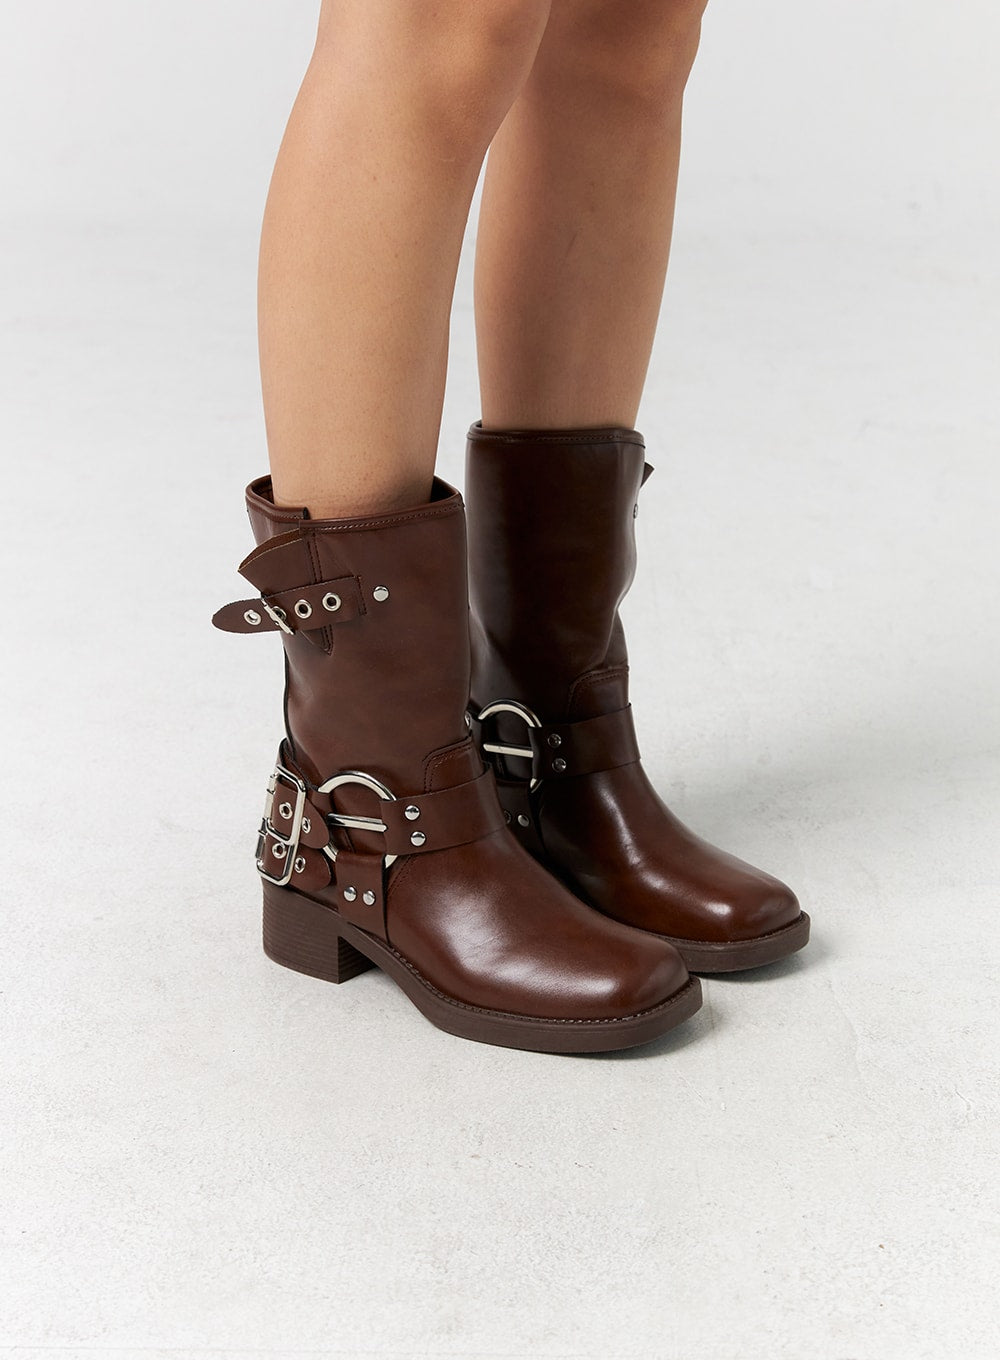 buckle-mid-calf-boots-cg301